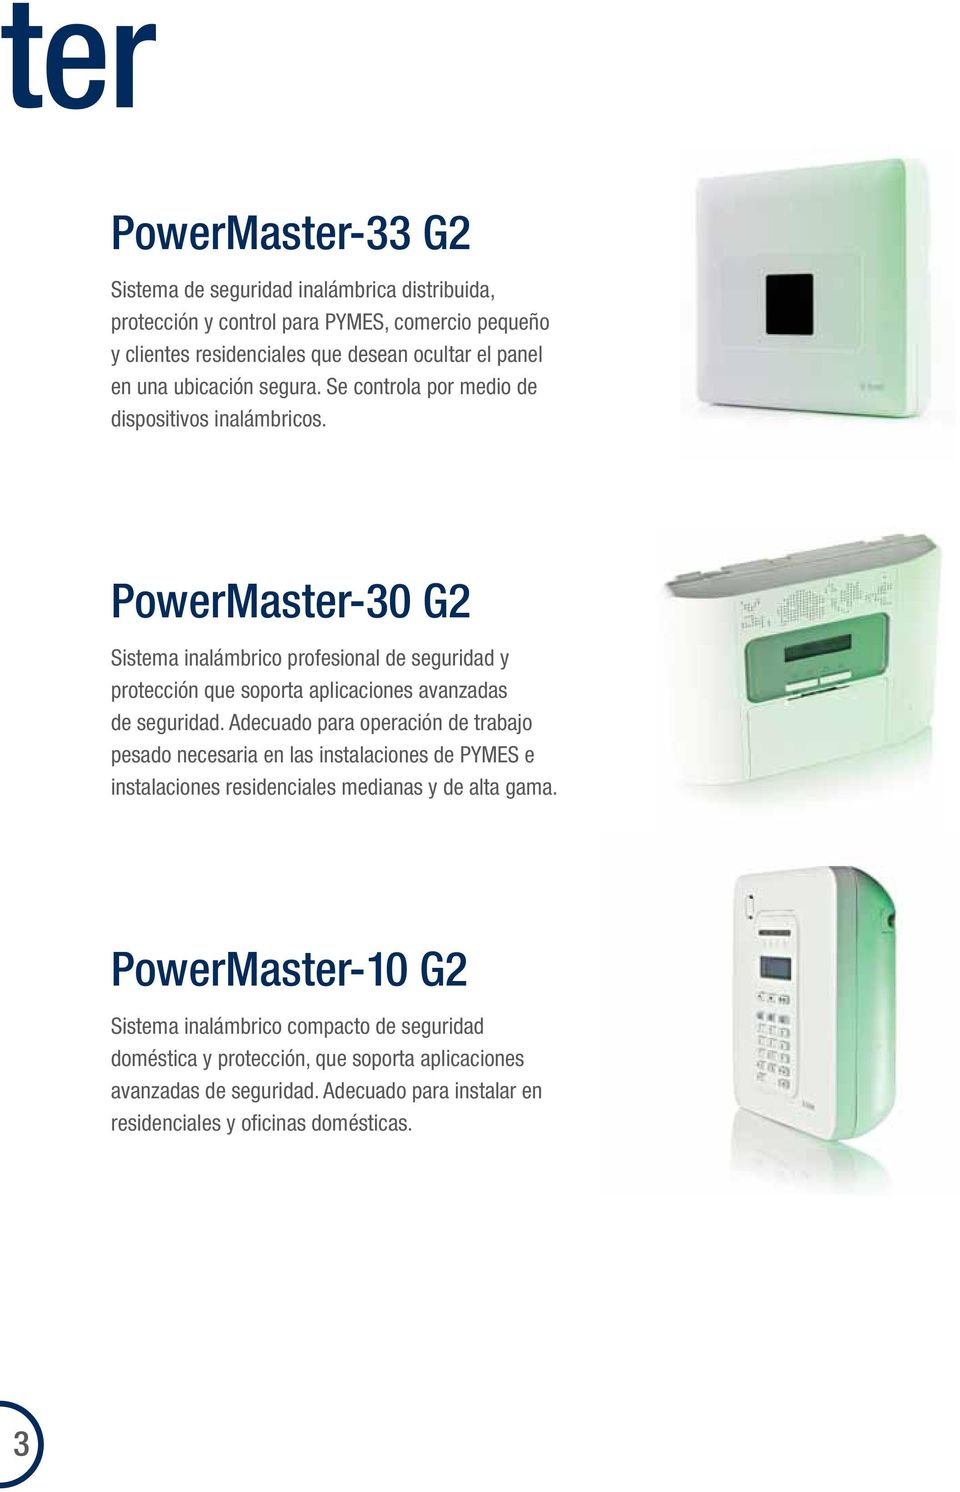 PowerMaster-30 G2 Sistema inalámbrico profesional de seguridad y protección que soporta aplicaciones avanzadas de seguridad.